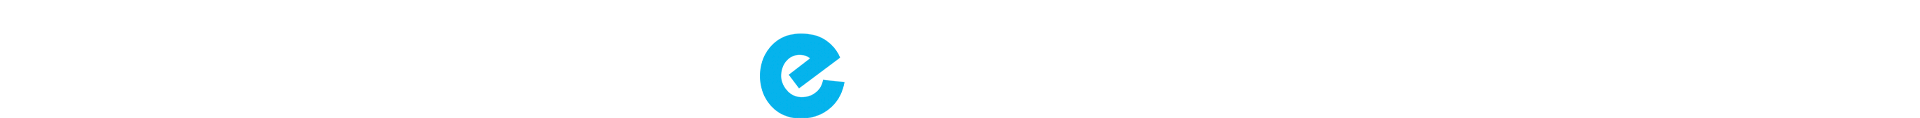 e-trail logo